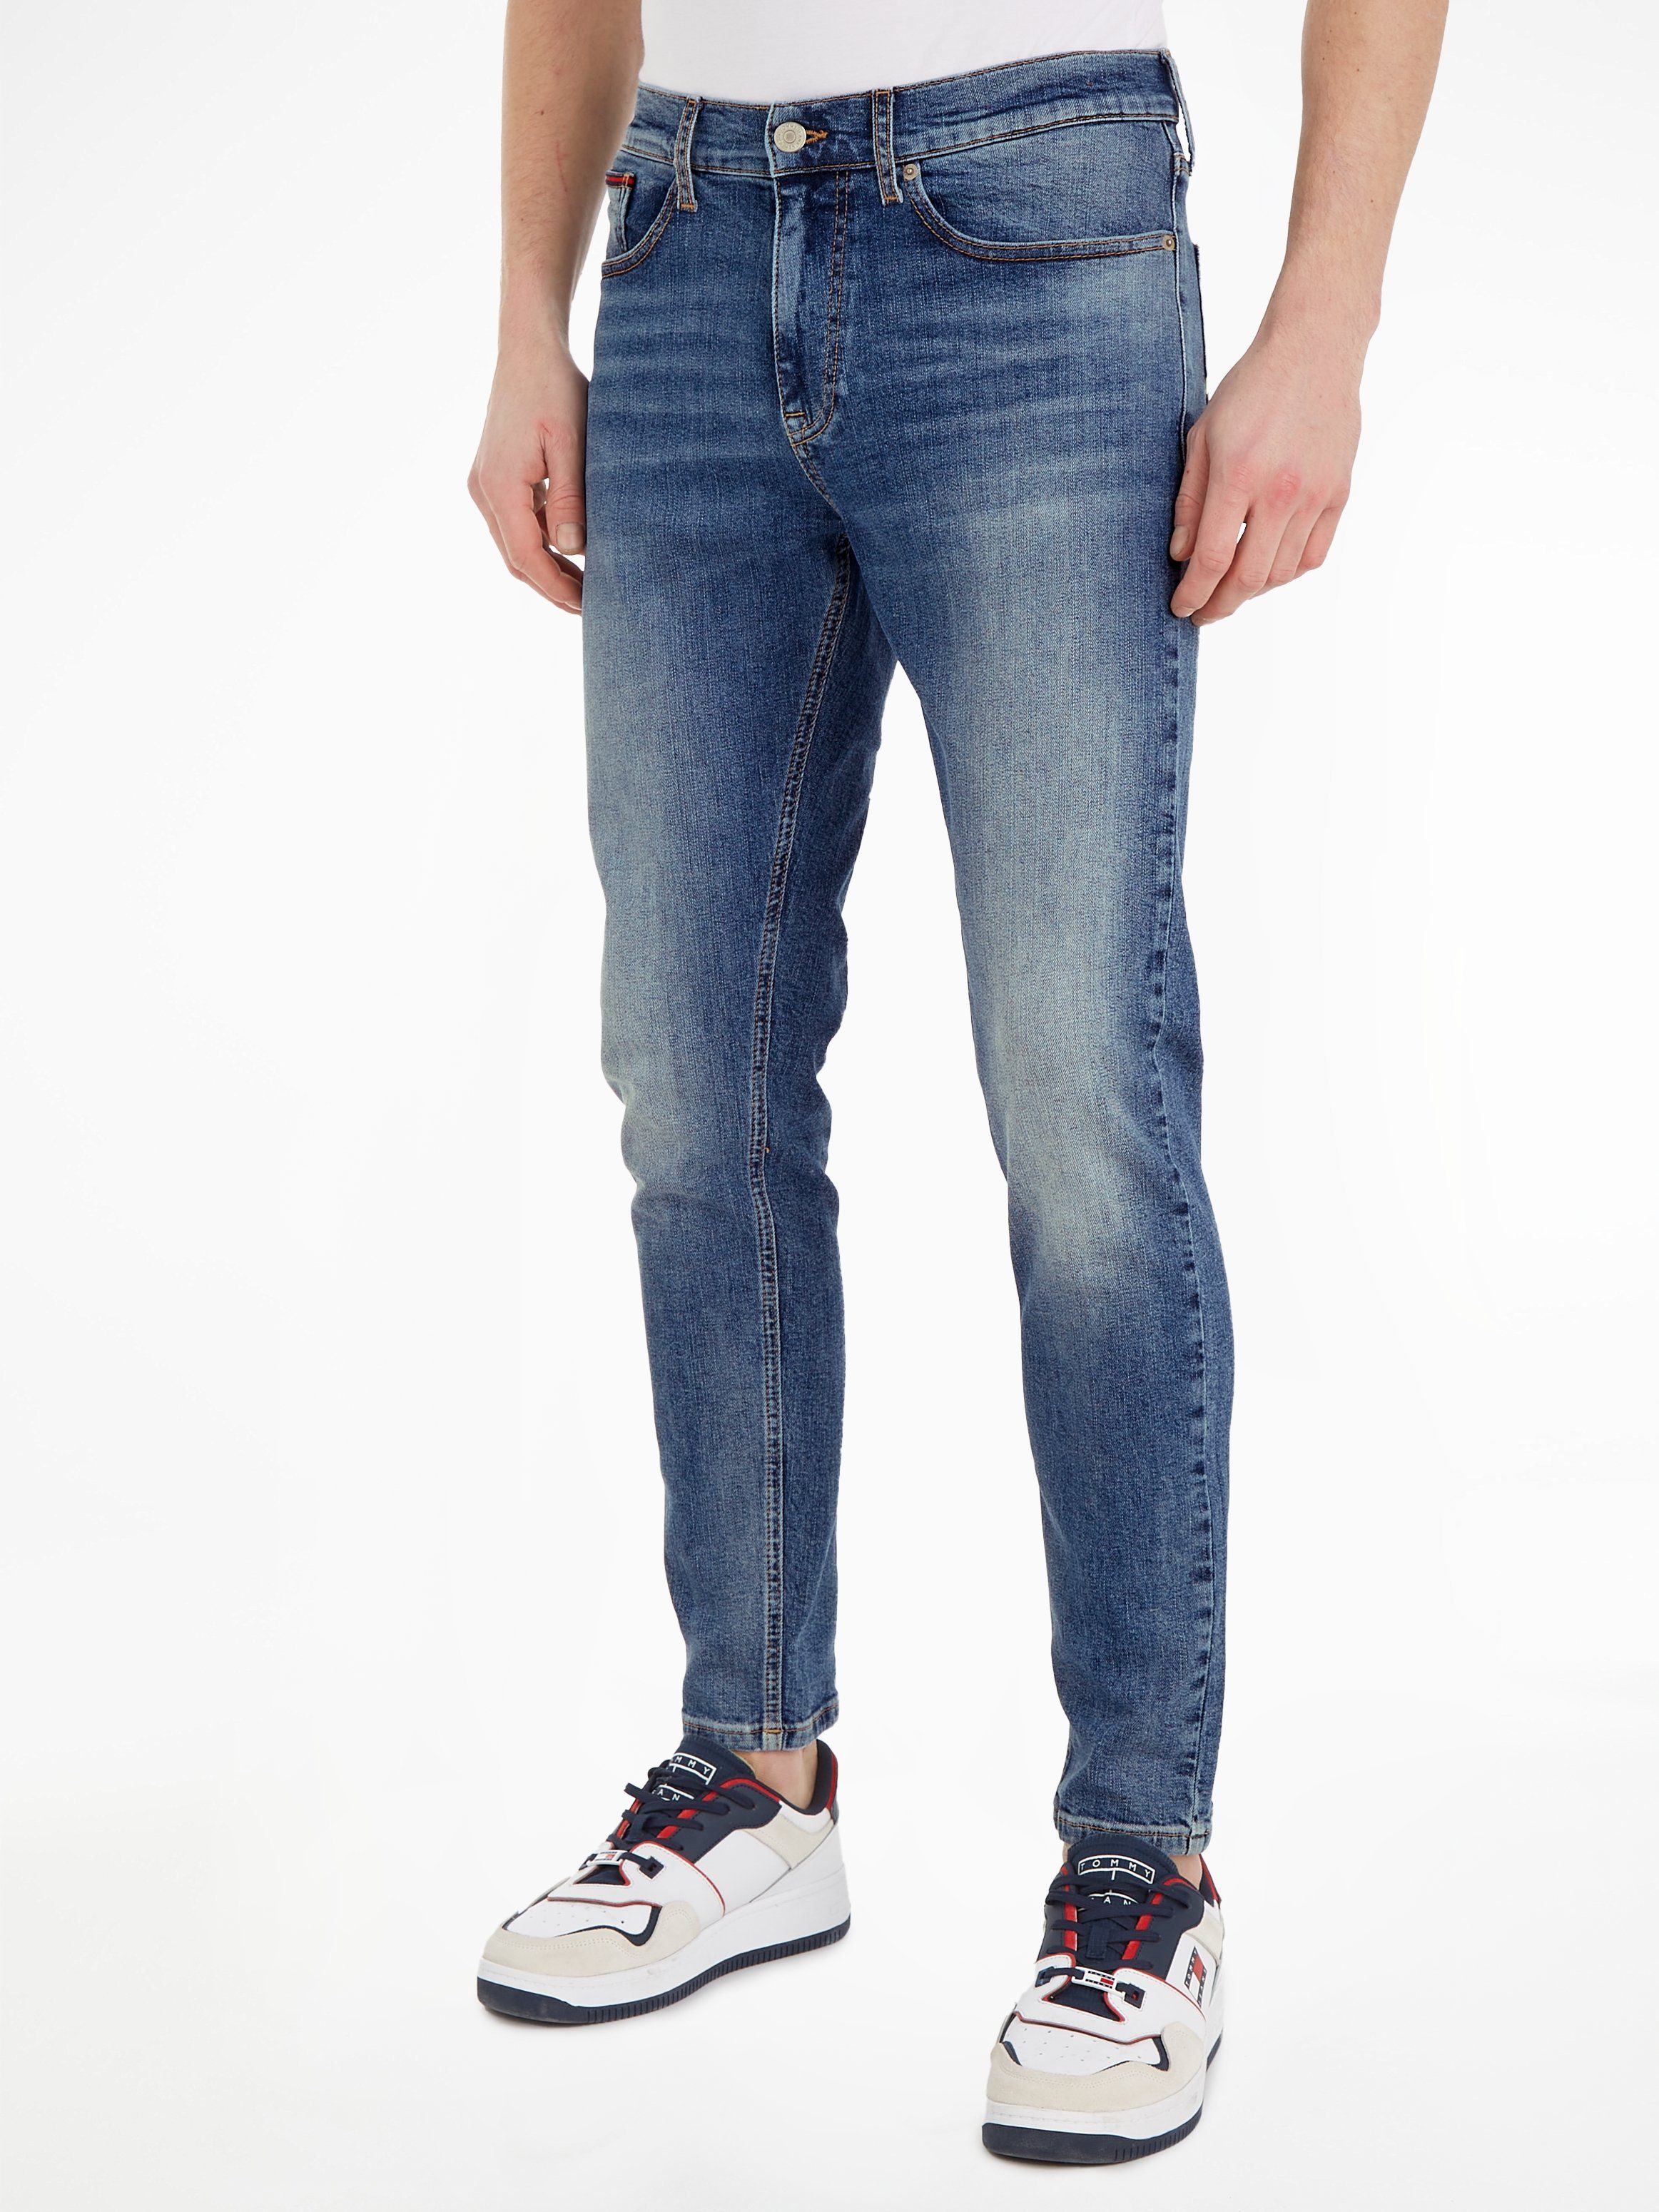 TPRD Tommy light SLIM blue Jeans AUSTIN 1AB 5-Pocket-Jeans denim